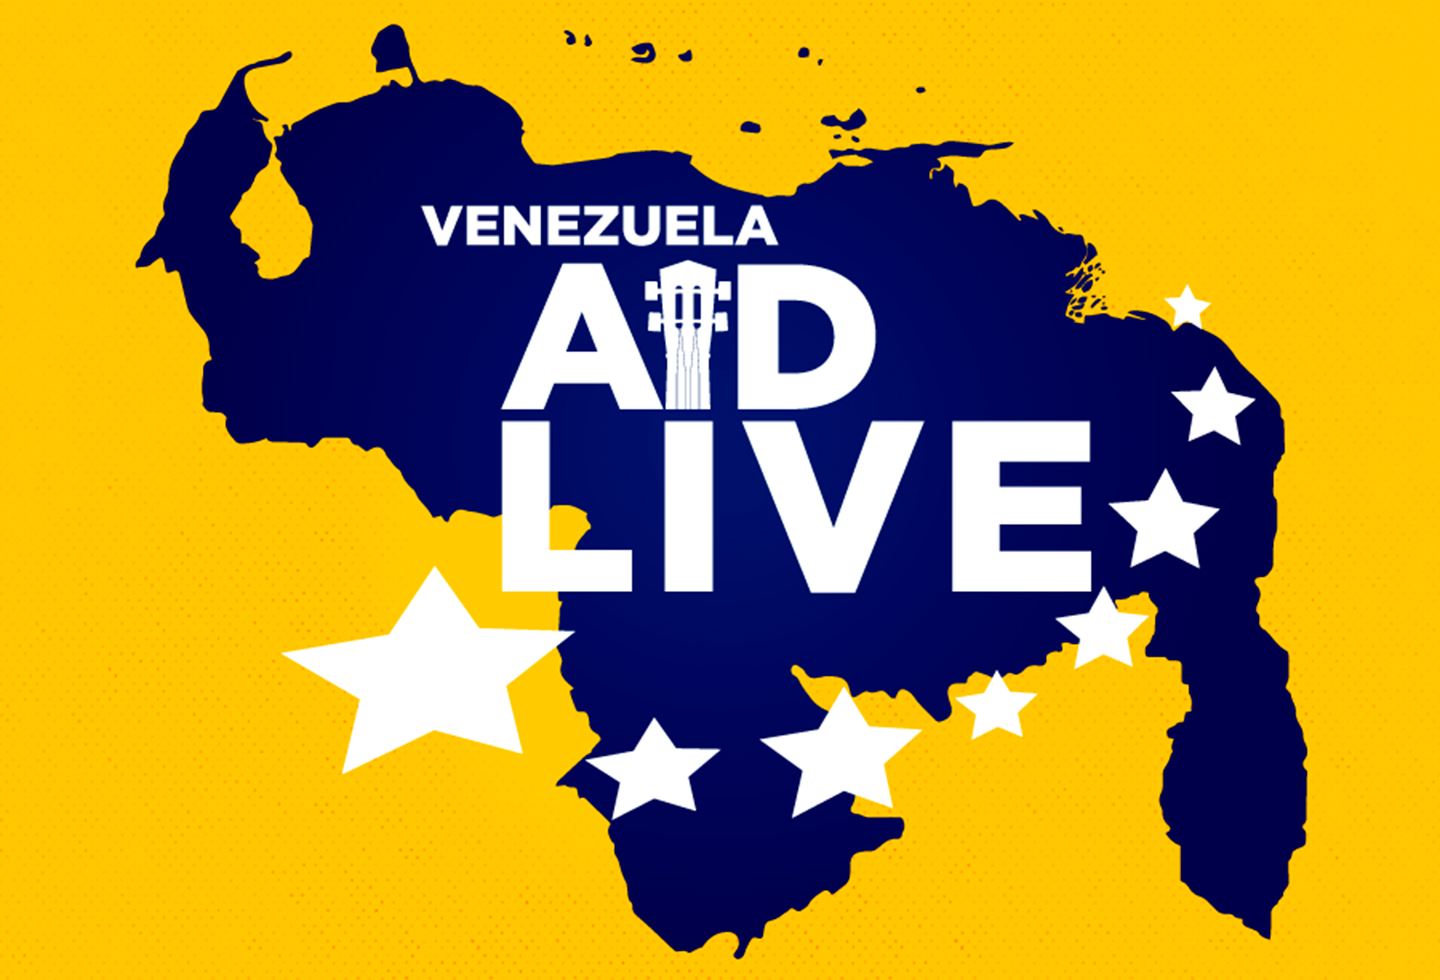 Venezuela Aid Live, un concierto que pasará a la historia